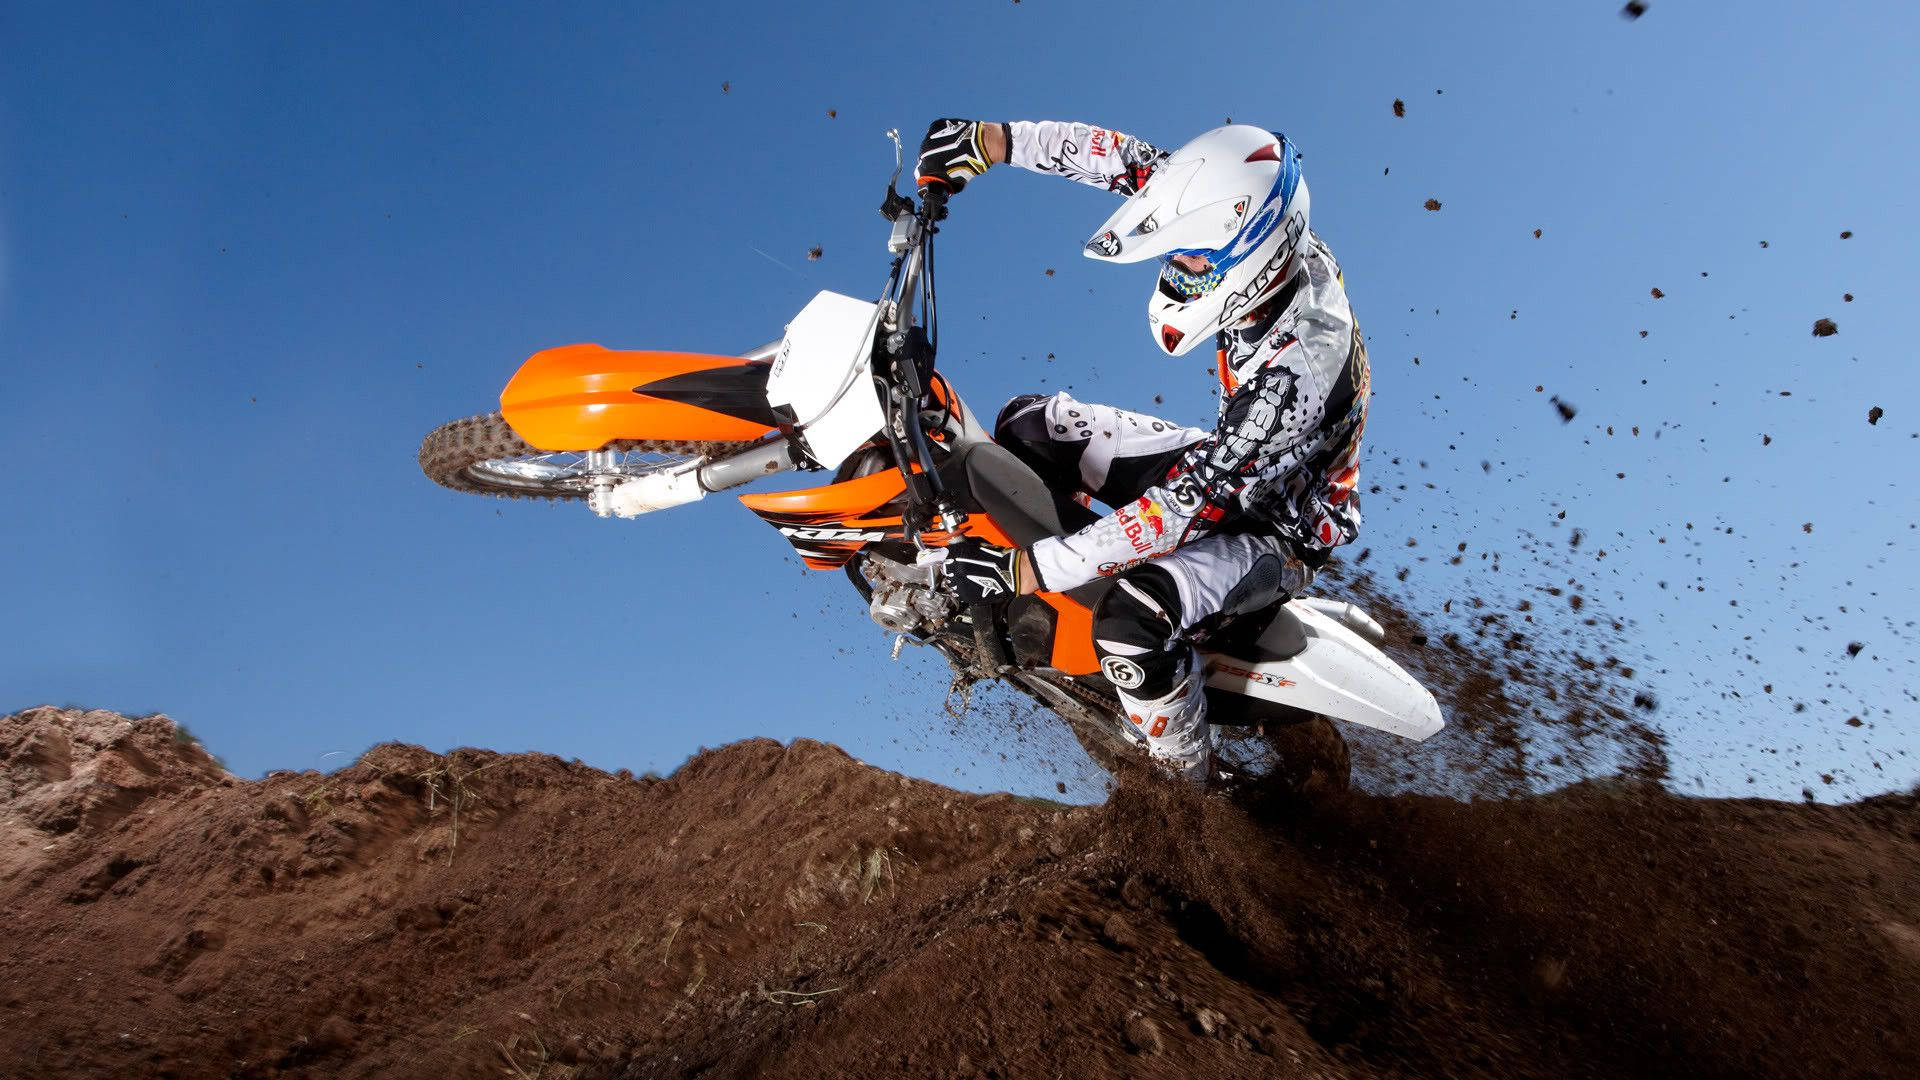 Eineperson Fährt Auf Einem Motocross-motorrad Auf Einer Dirt-strecke. Wallpaper